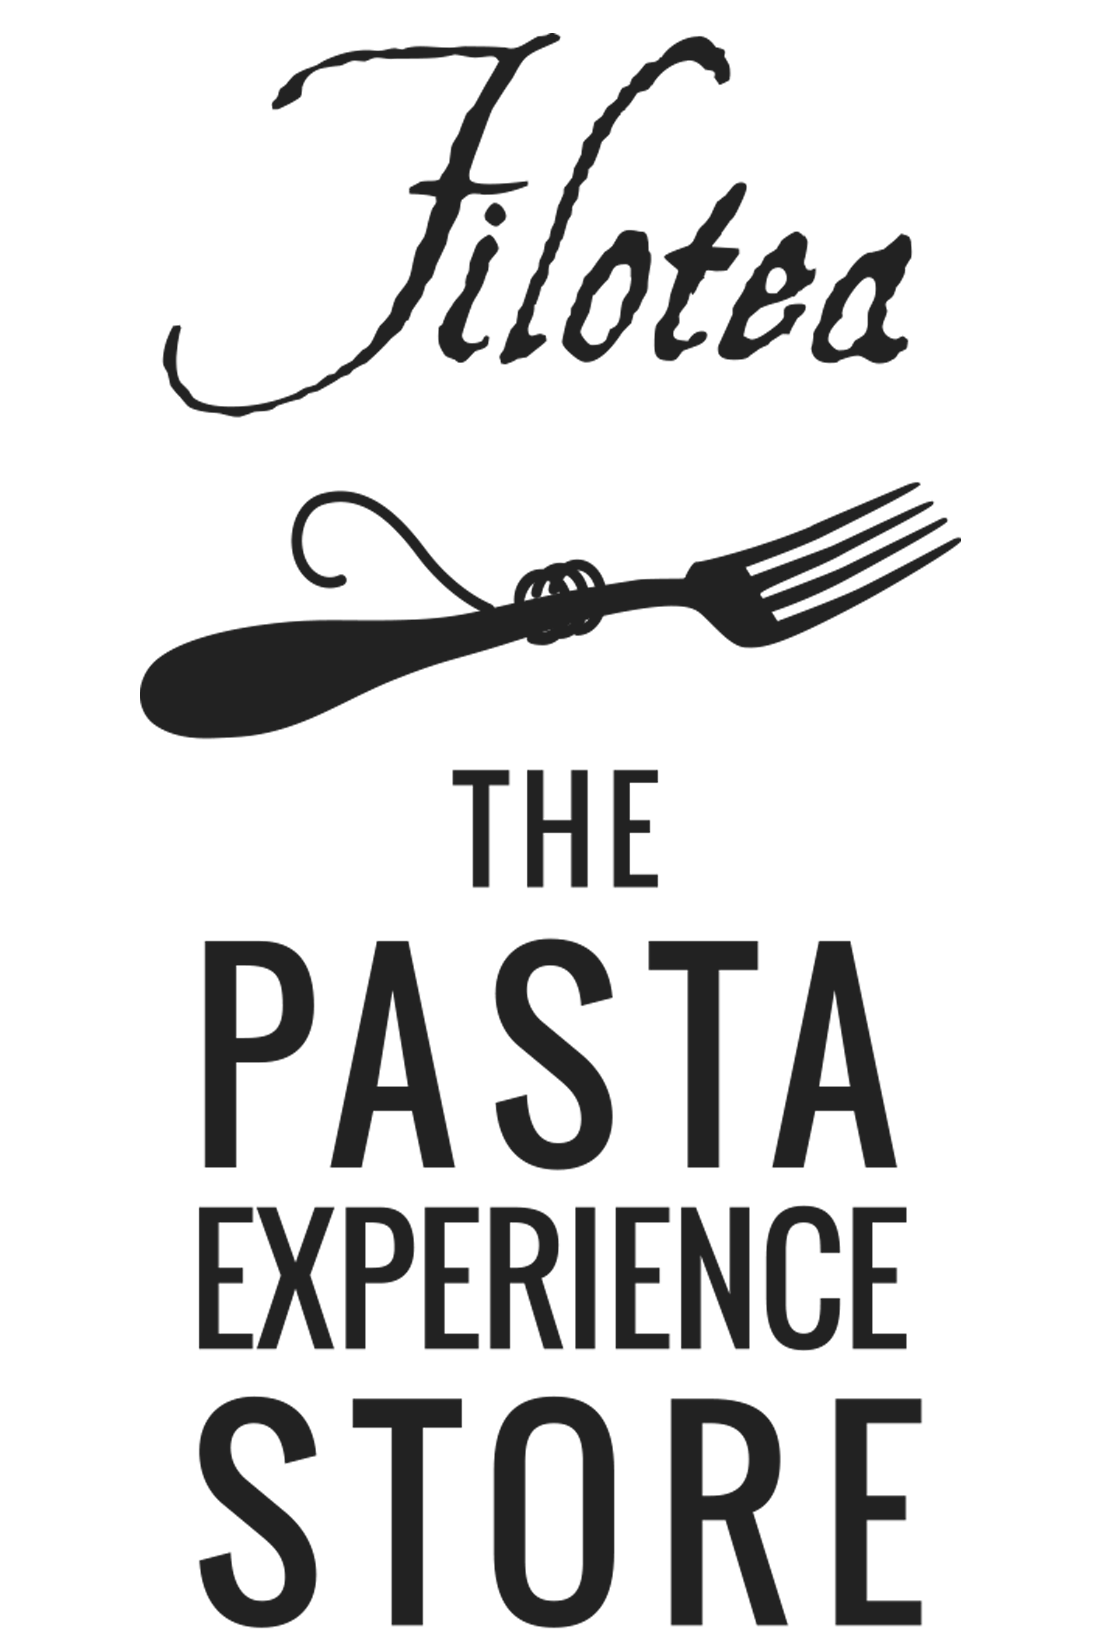 Forchetta Experience Store